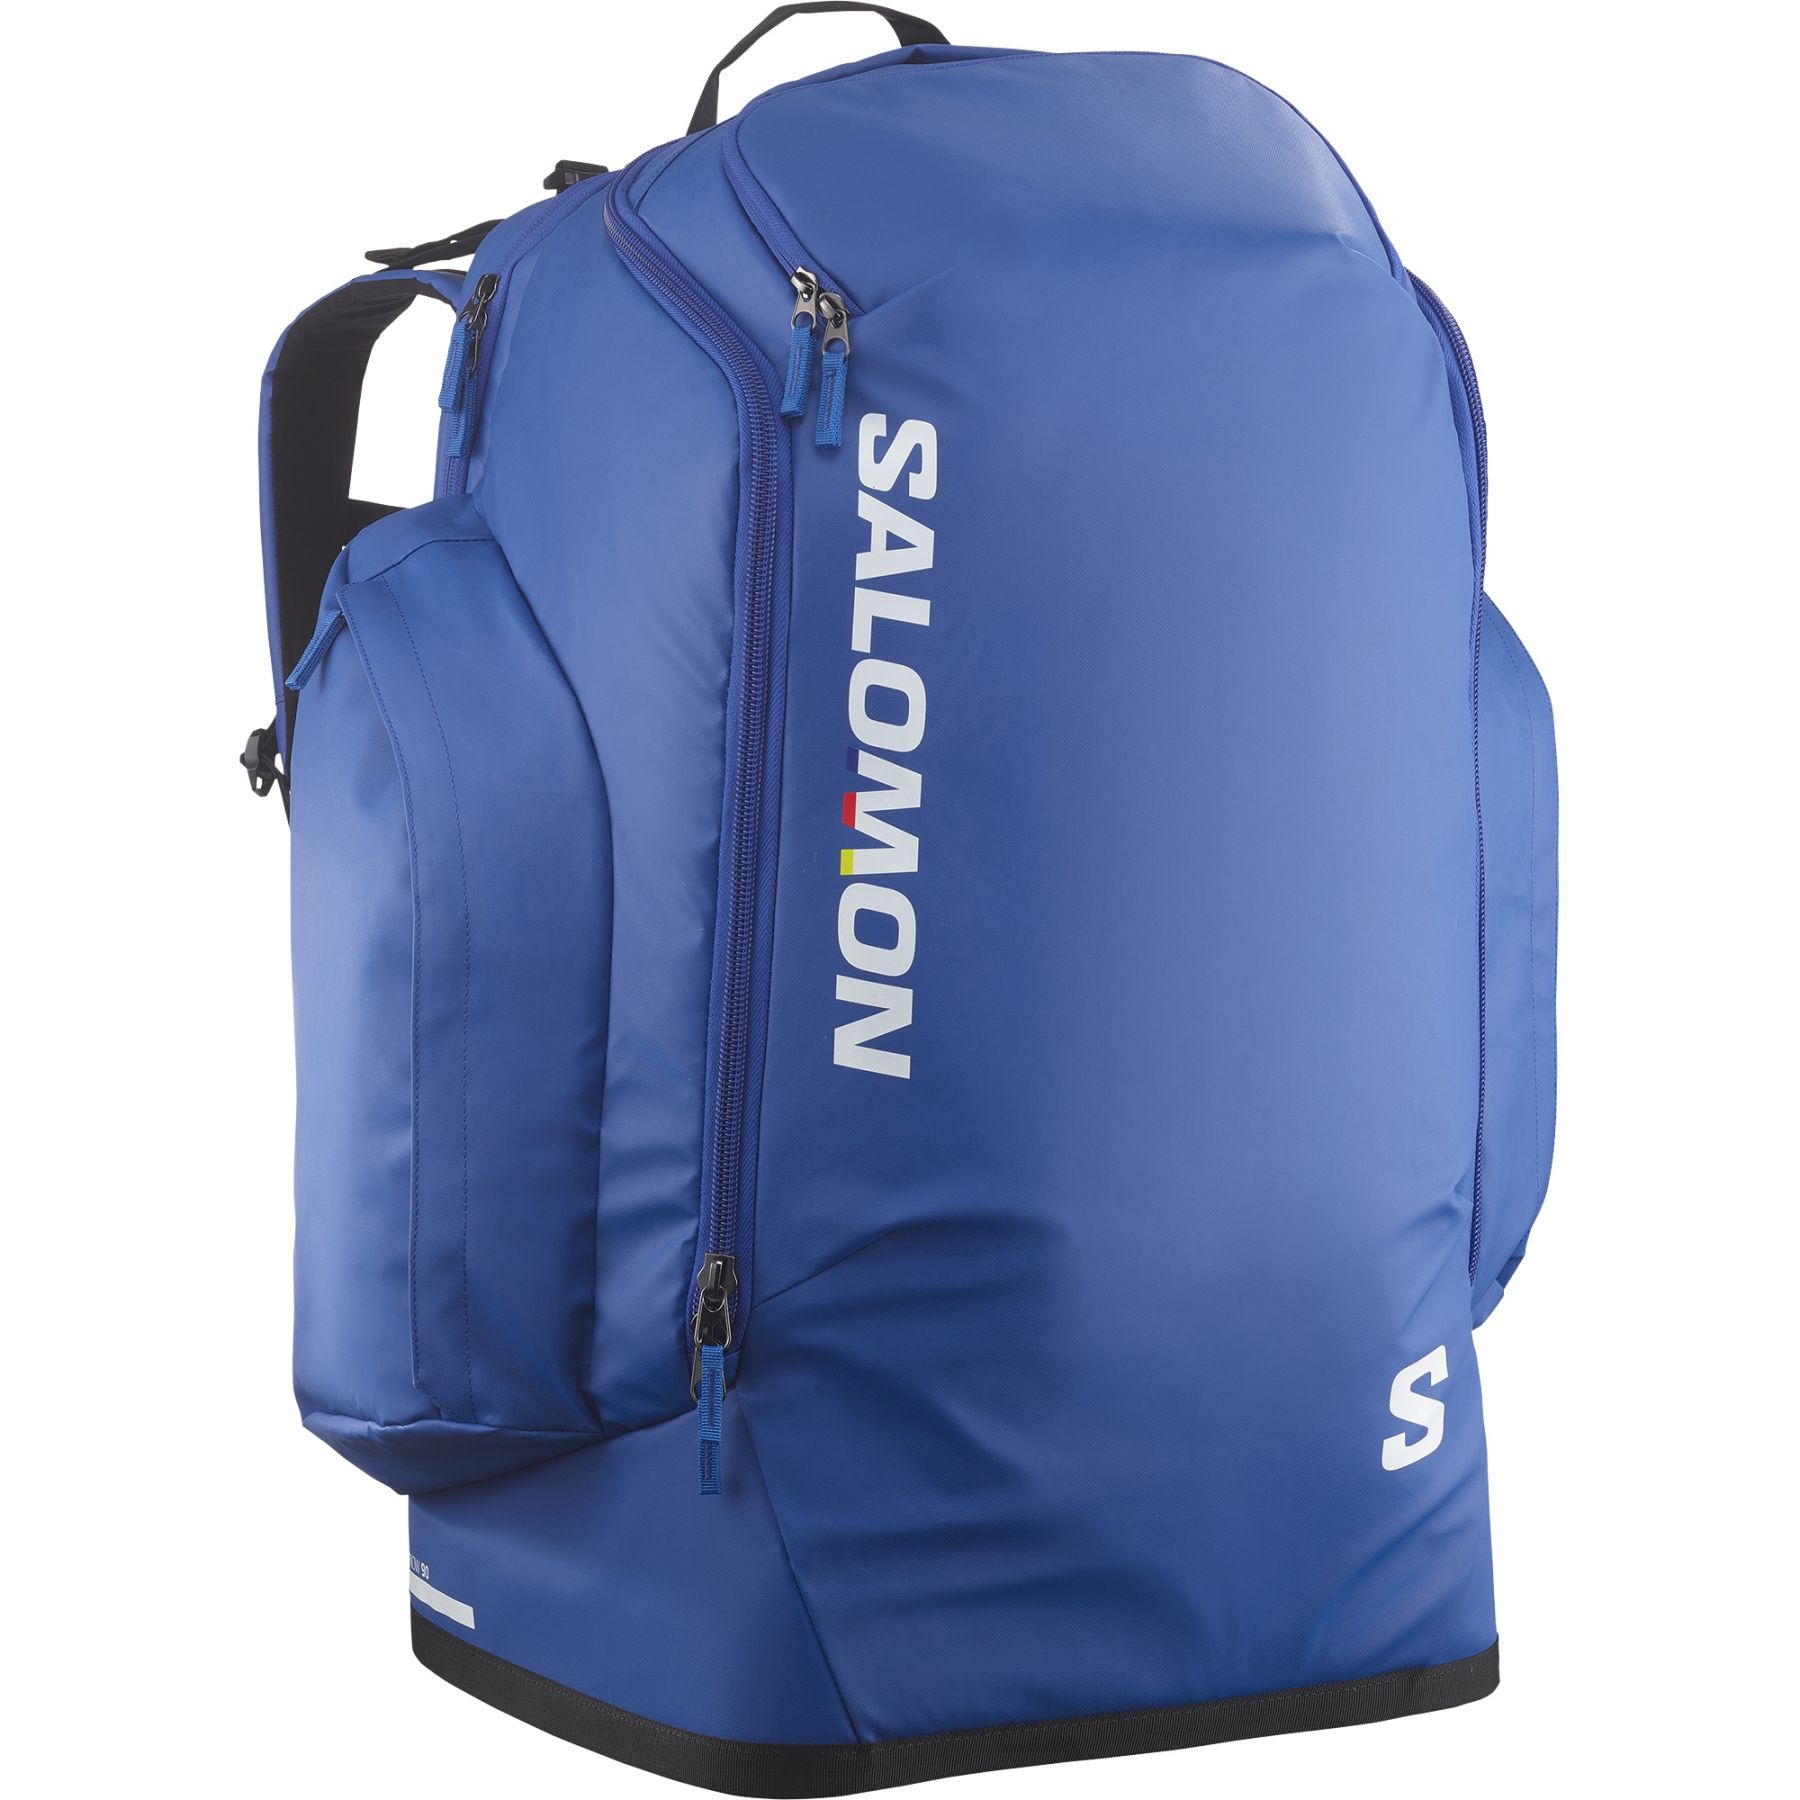 Brug Salomon Go To Snow, 90L, rygsæk, blå til en forbedret oplevelse